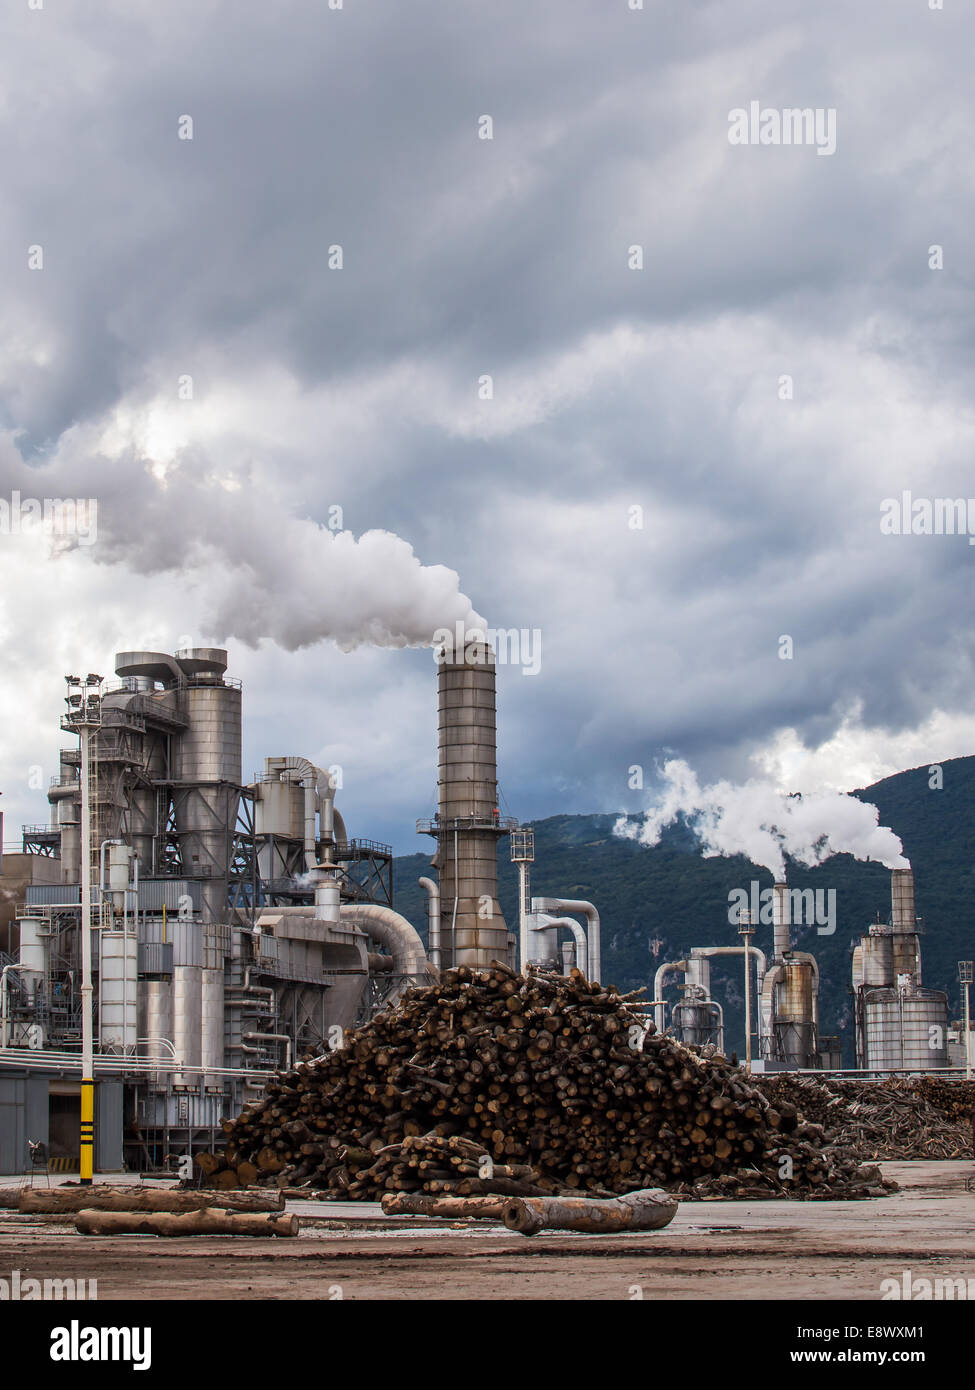 Impianto industriale di una fabbrica di mobili con comignoli fumanti sul cielo tempestoso Foto Stock